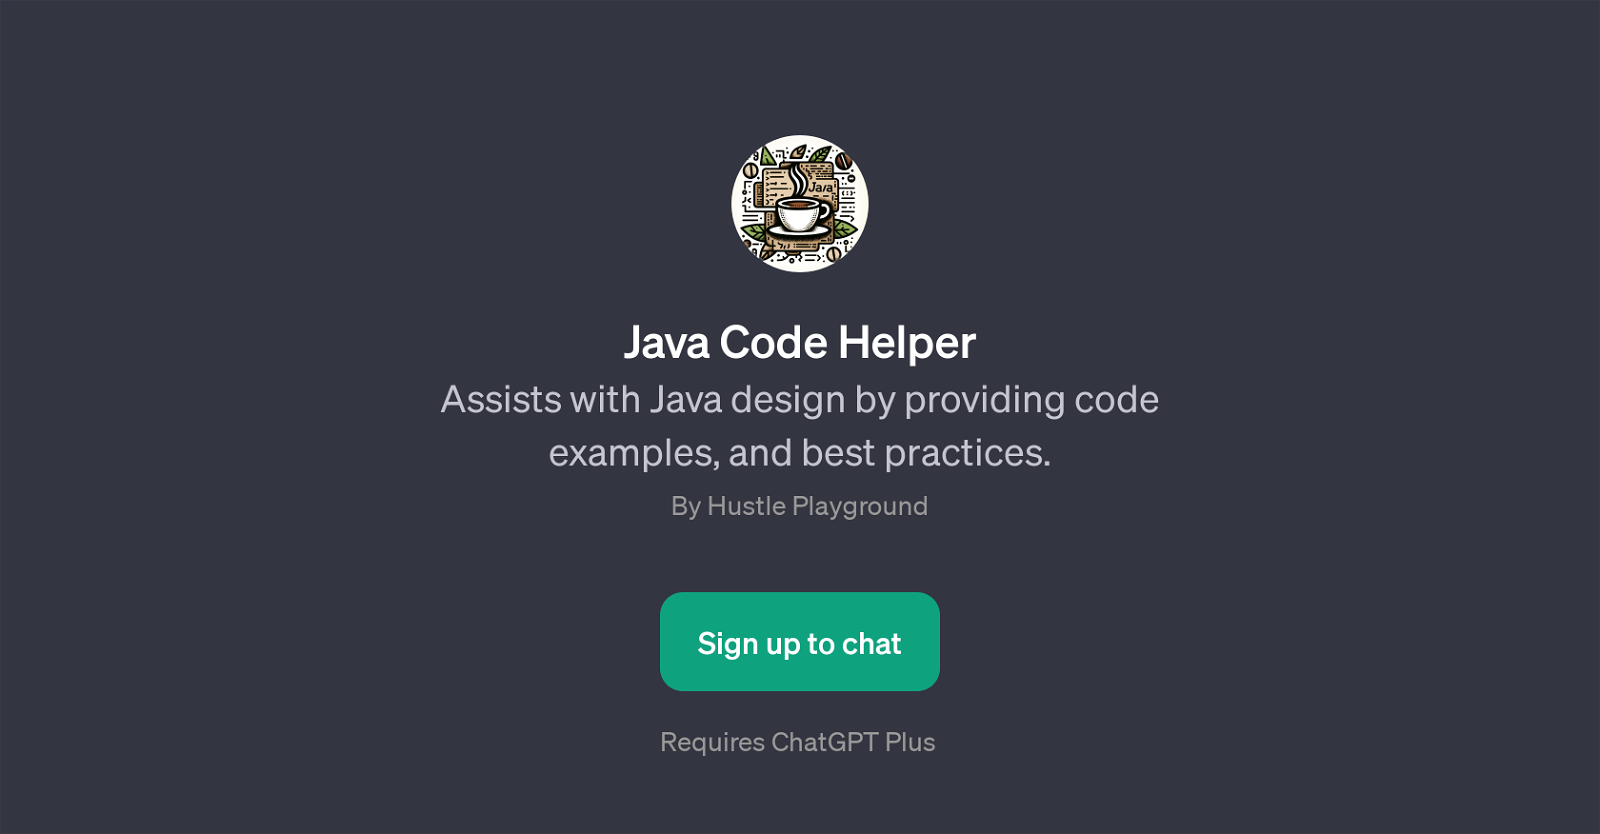 Java Code Helper website